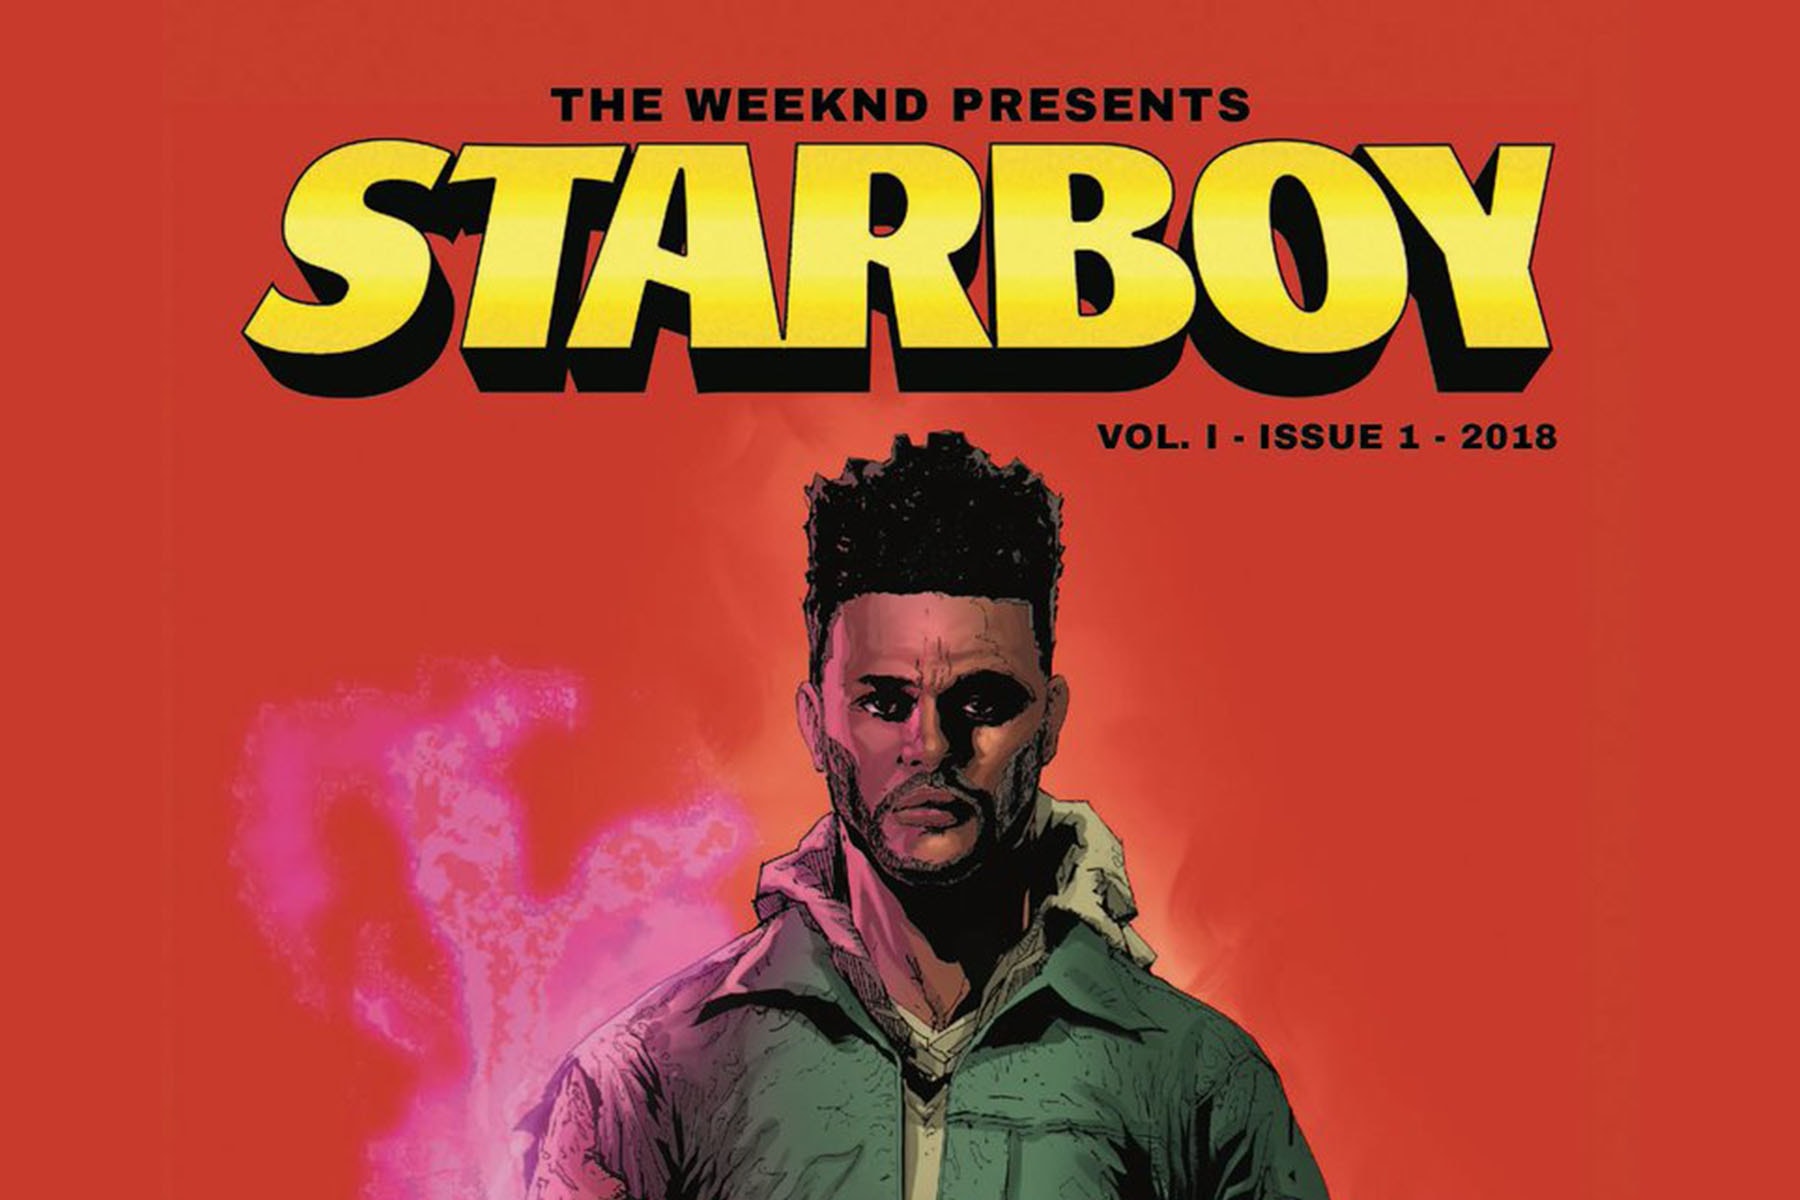 ザ・ウィークエンド マーベル marvel The Weeknd weekend